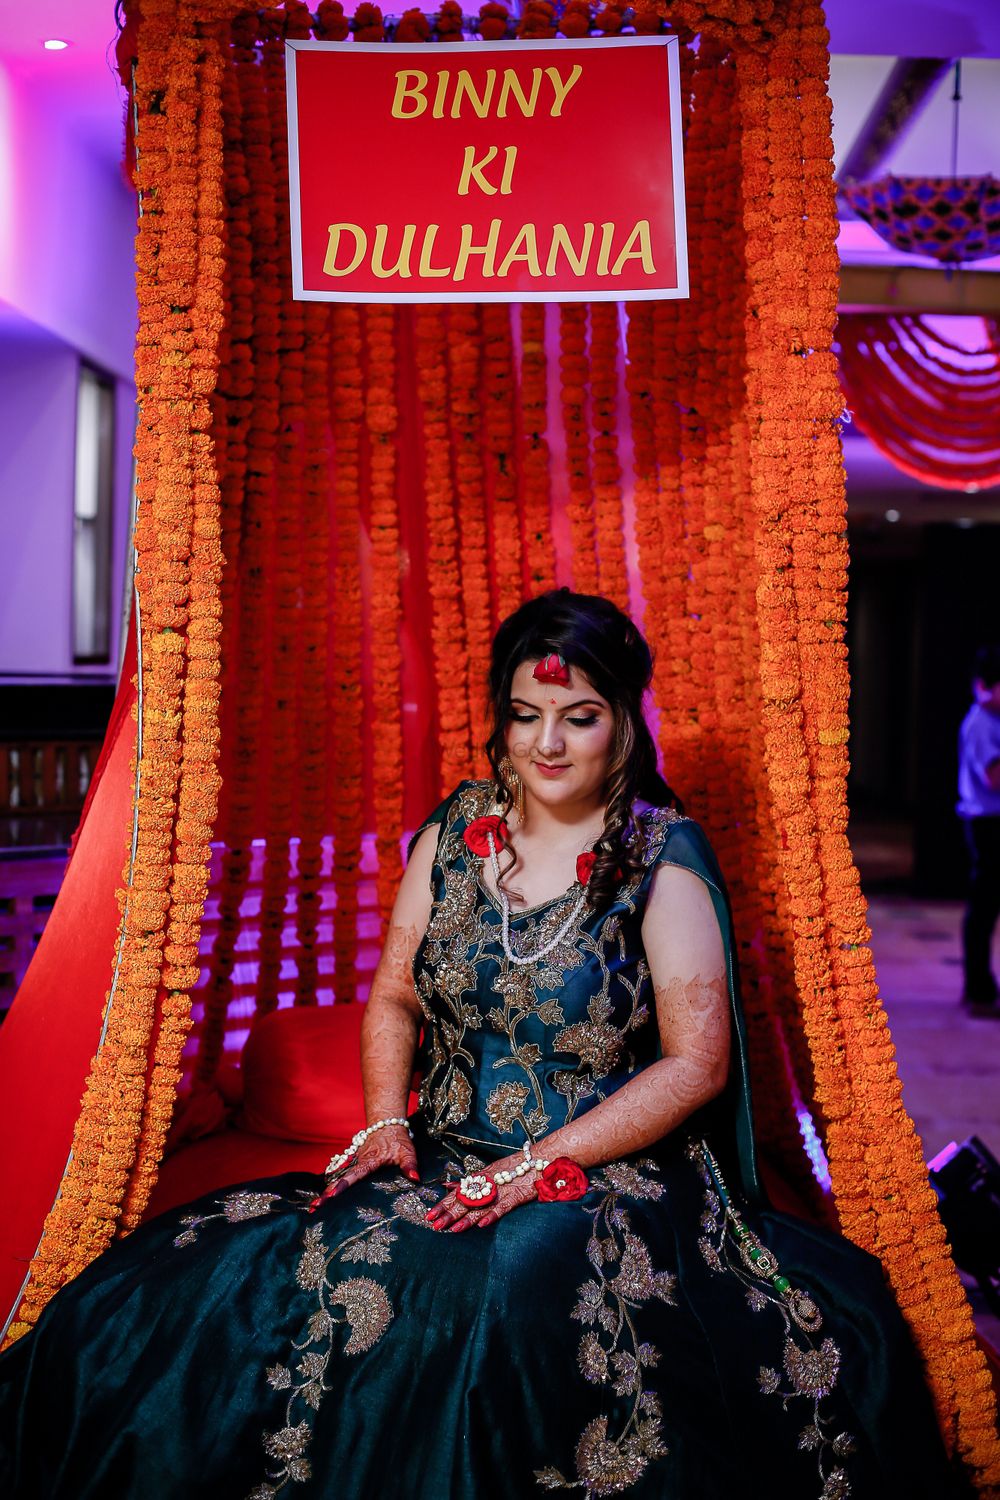 Photo From Brides - By Namrata Satwani